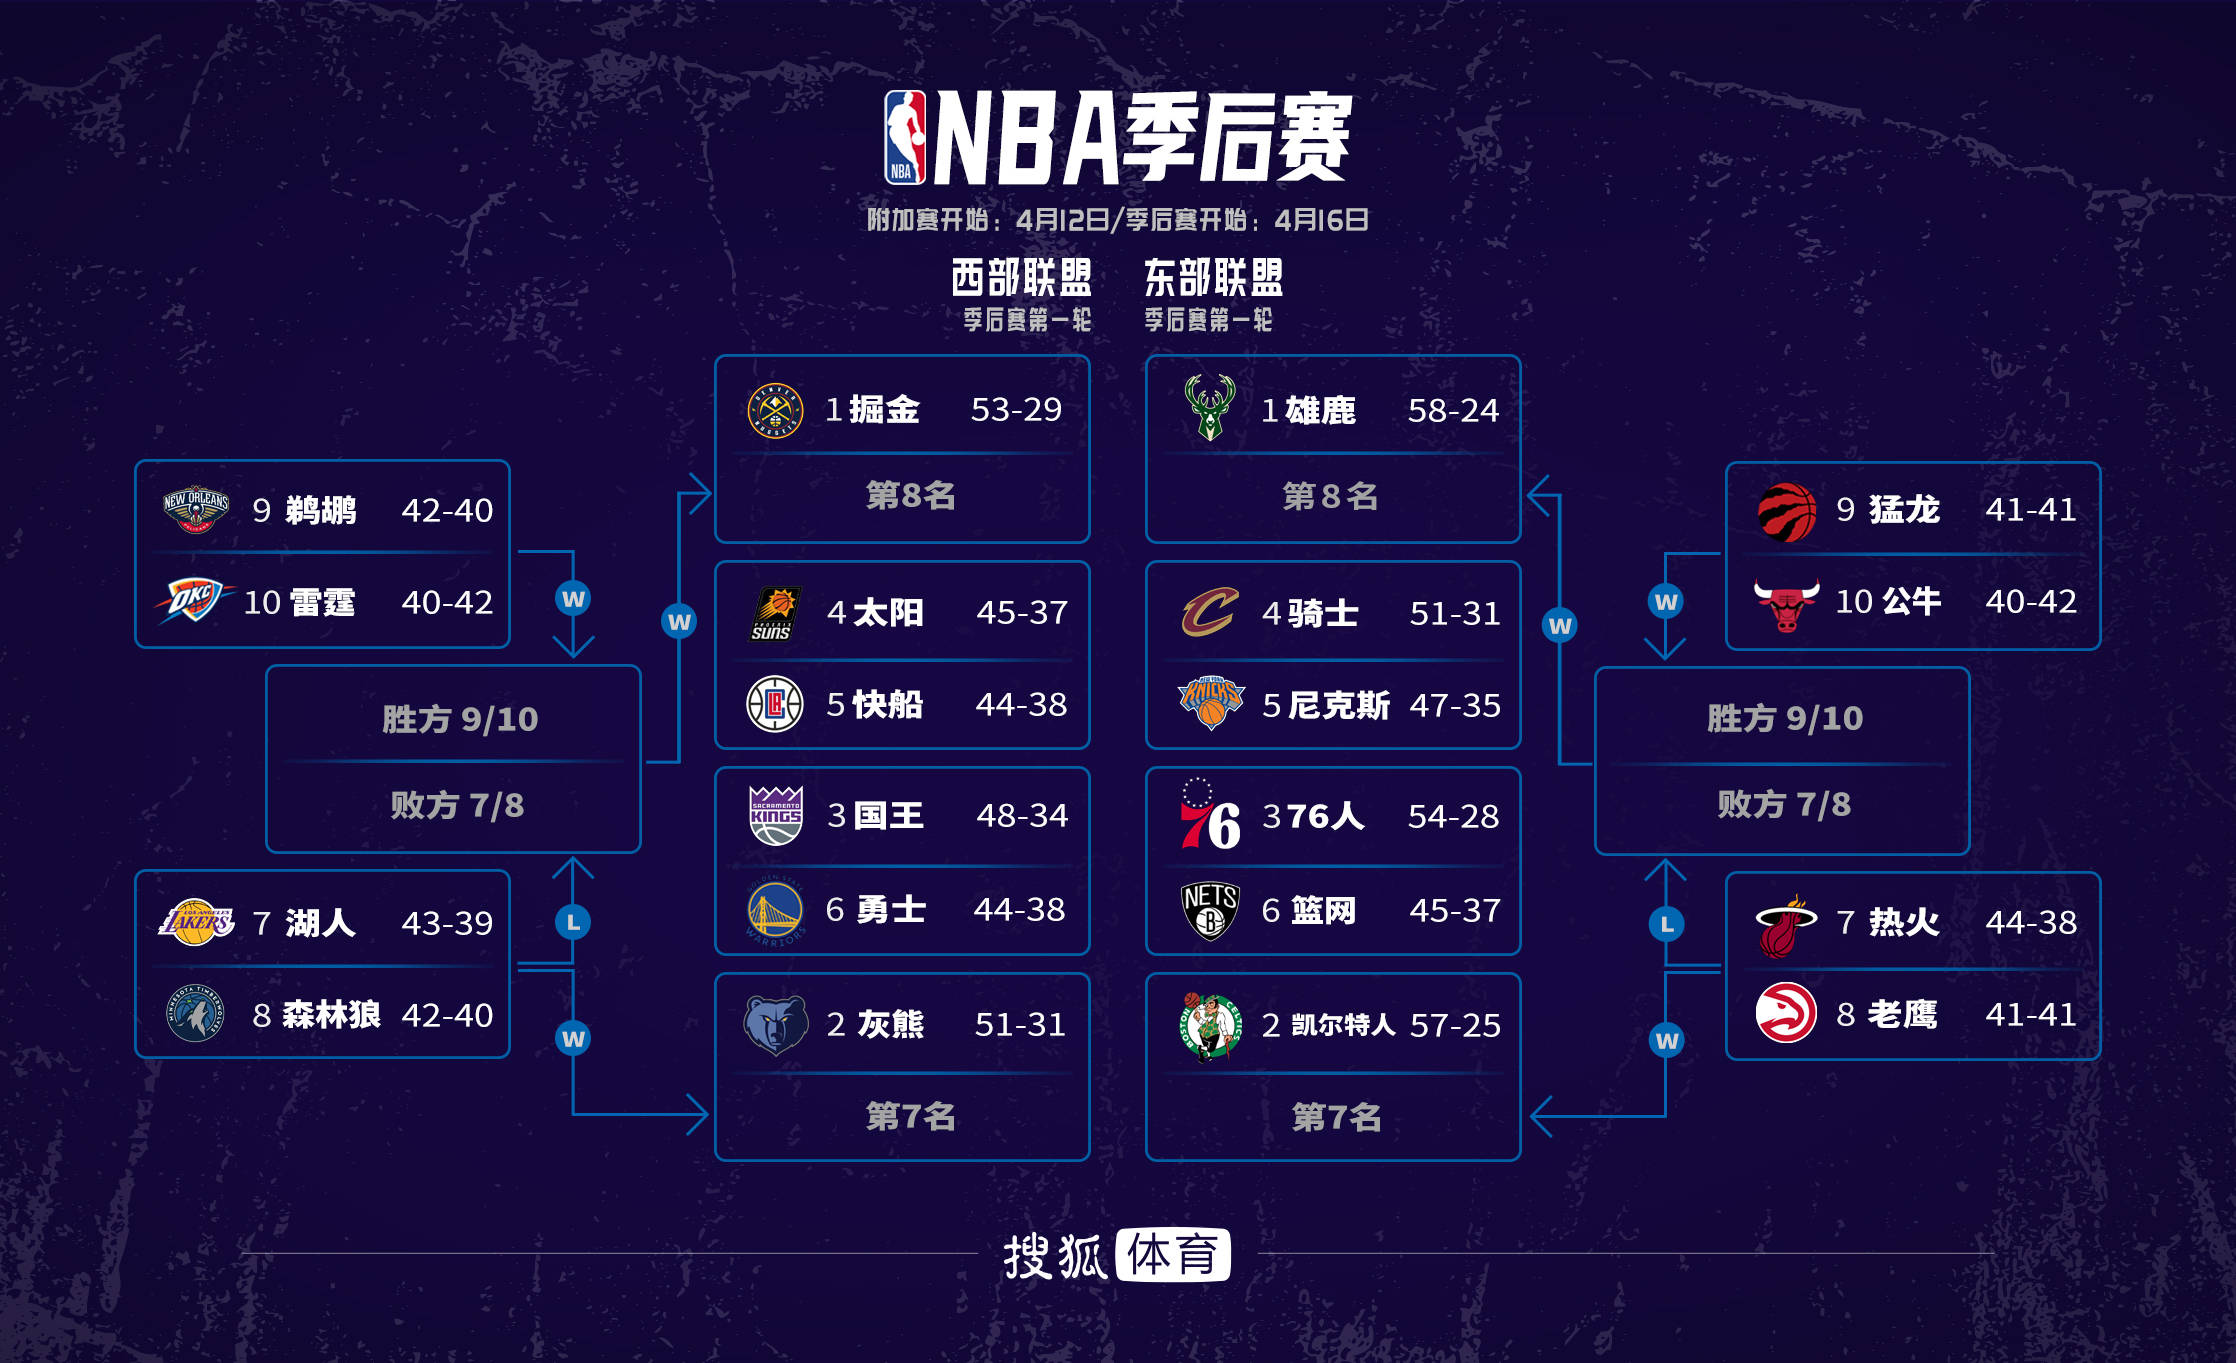 北京时间2023年4月10日,nba常规赛正式完成收官,季后赛及附加赛对阵也